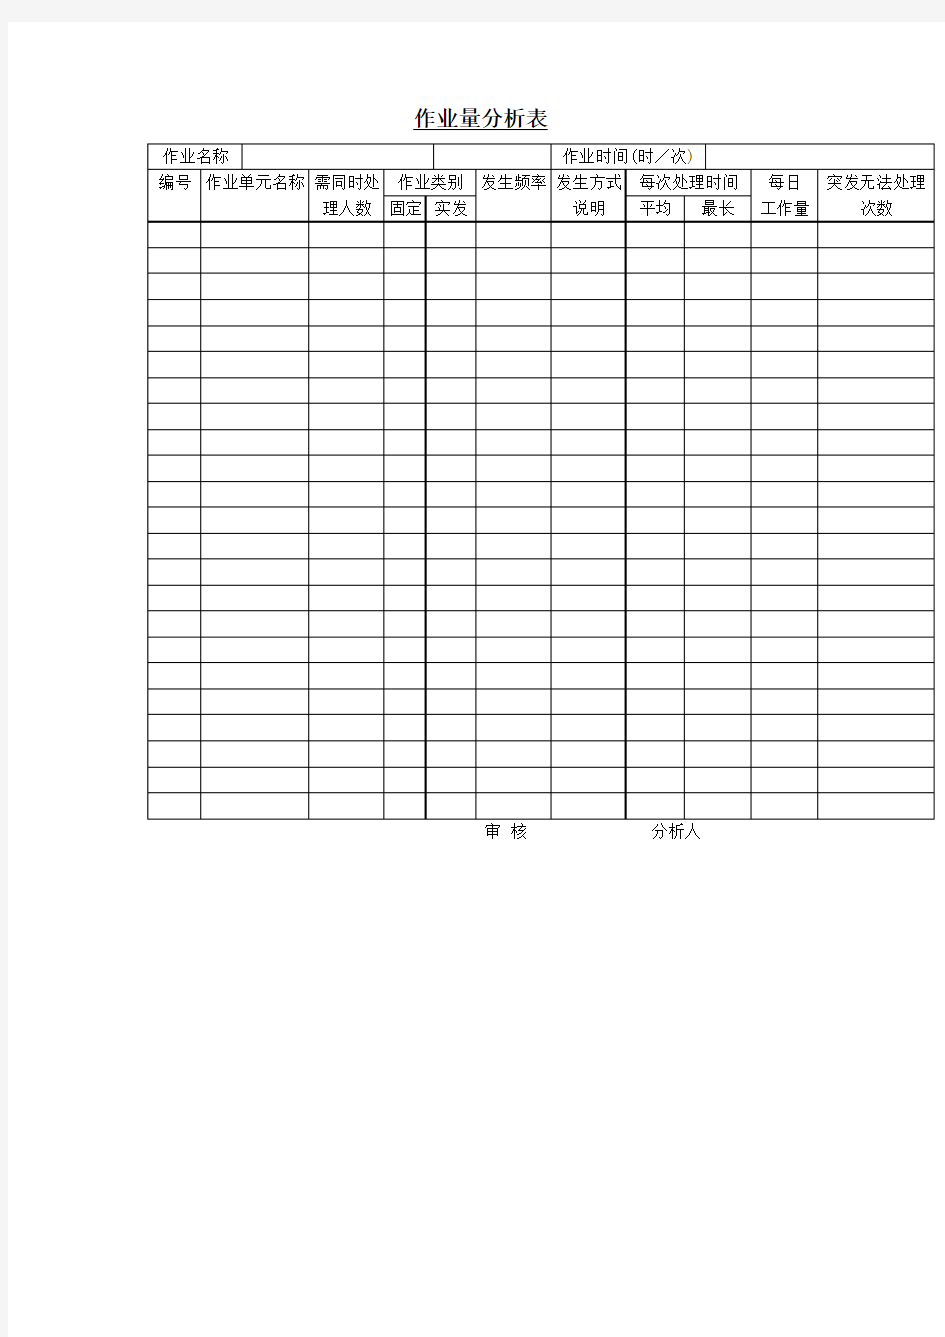 作业量分析表表格.格式